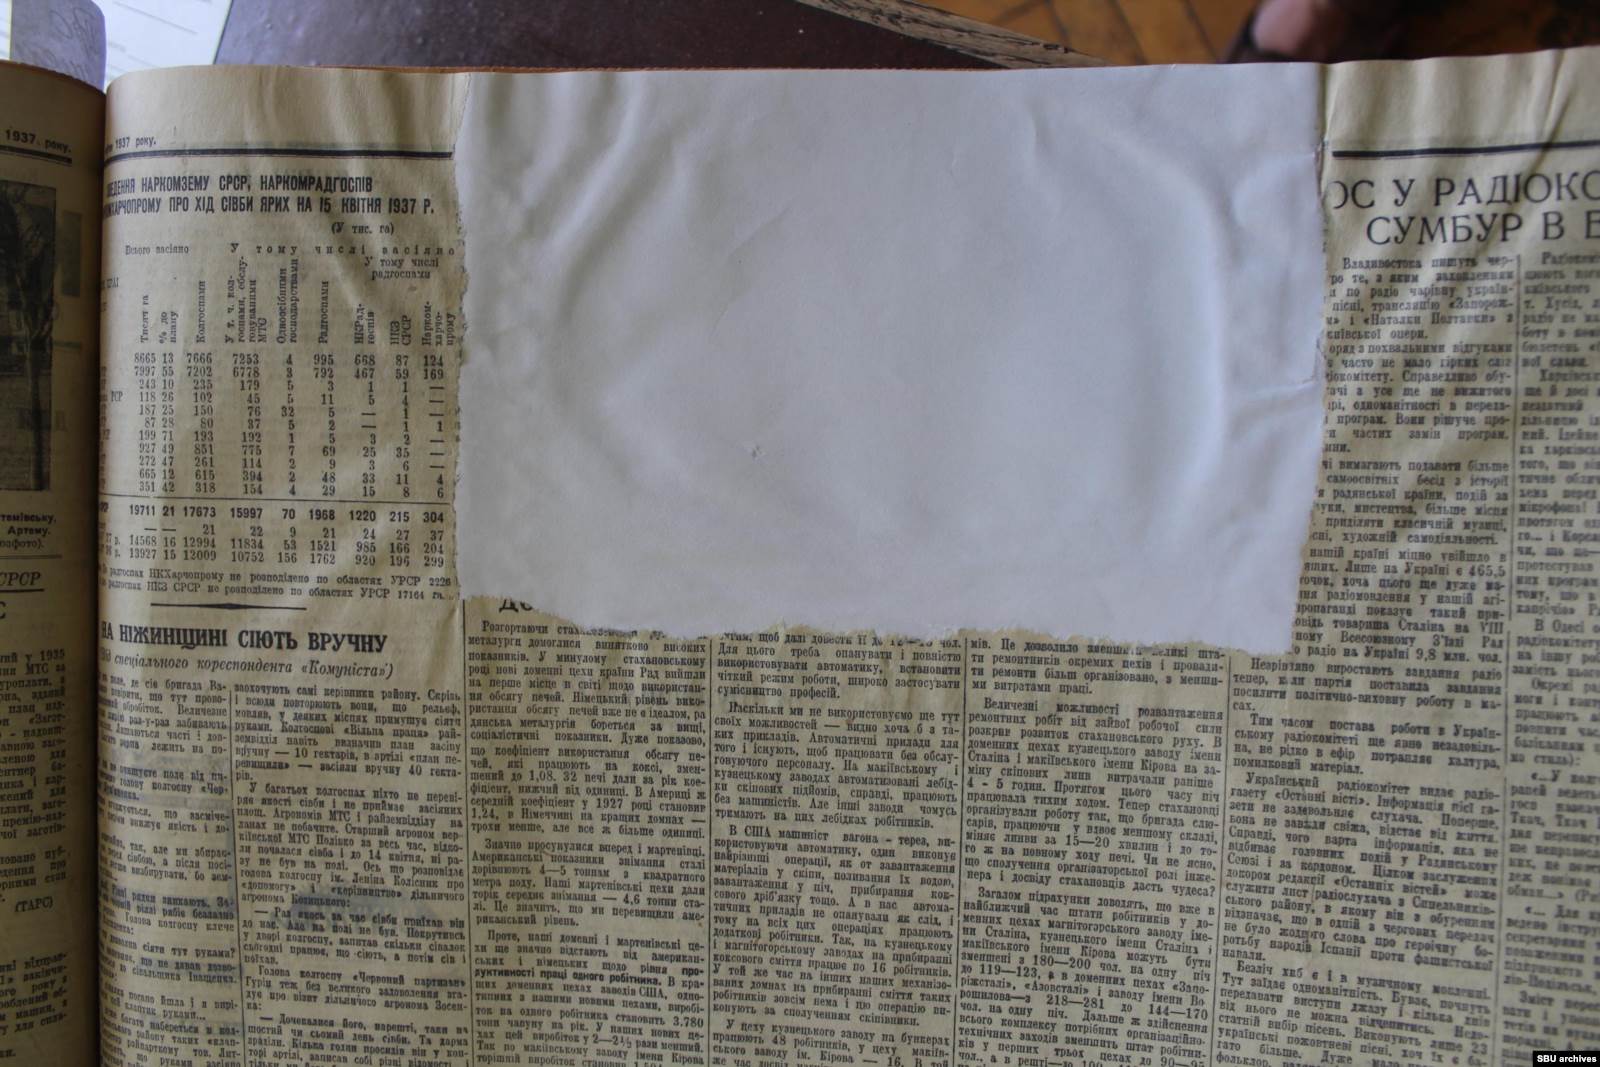 Экземпляр газеты «Комуніст» из библиотеки с вырванной фотографией